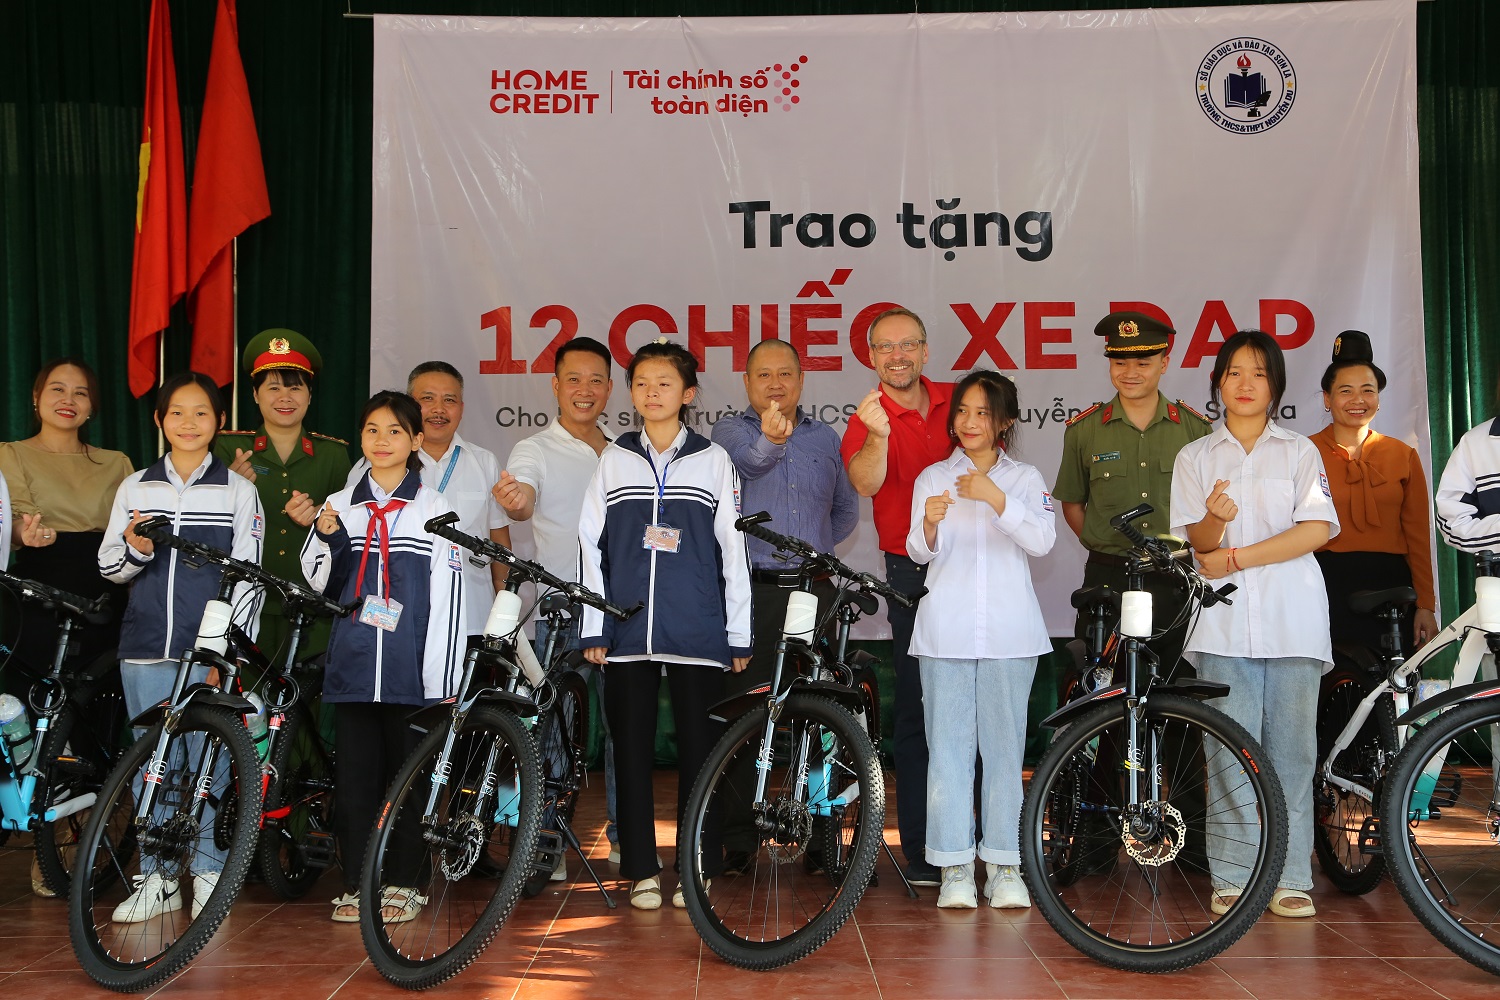 Đại diện Home Credit Việt Nam trao tặng nhiều suất học bổng và 12 chiếc xe đạp cho các em học sinh nghèo hiếu học